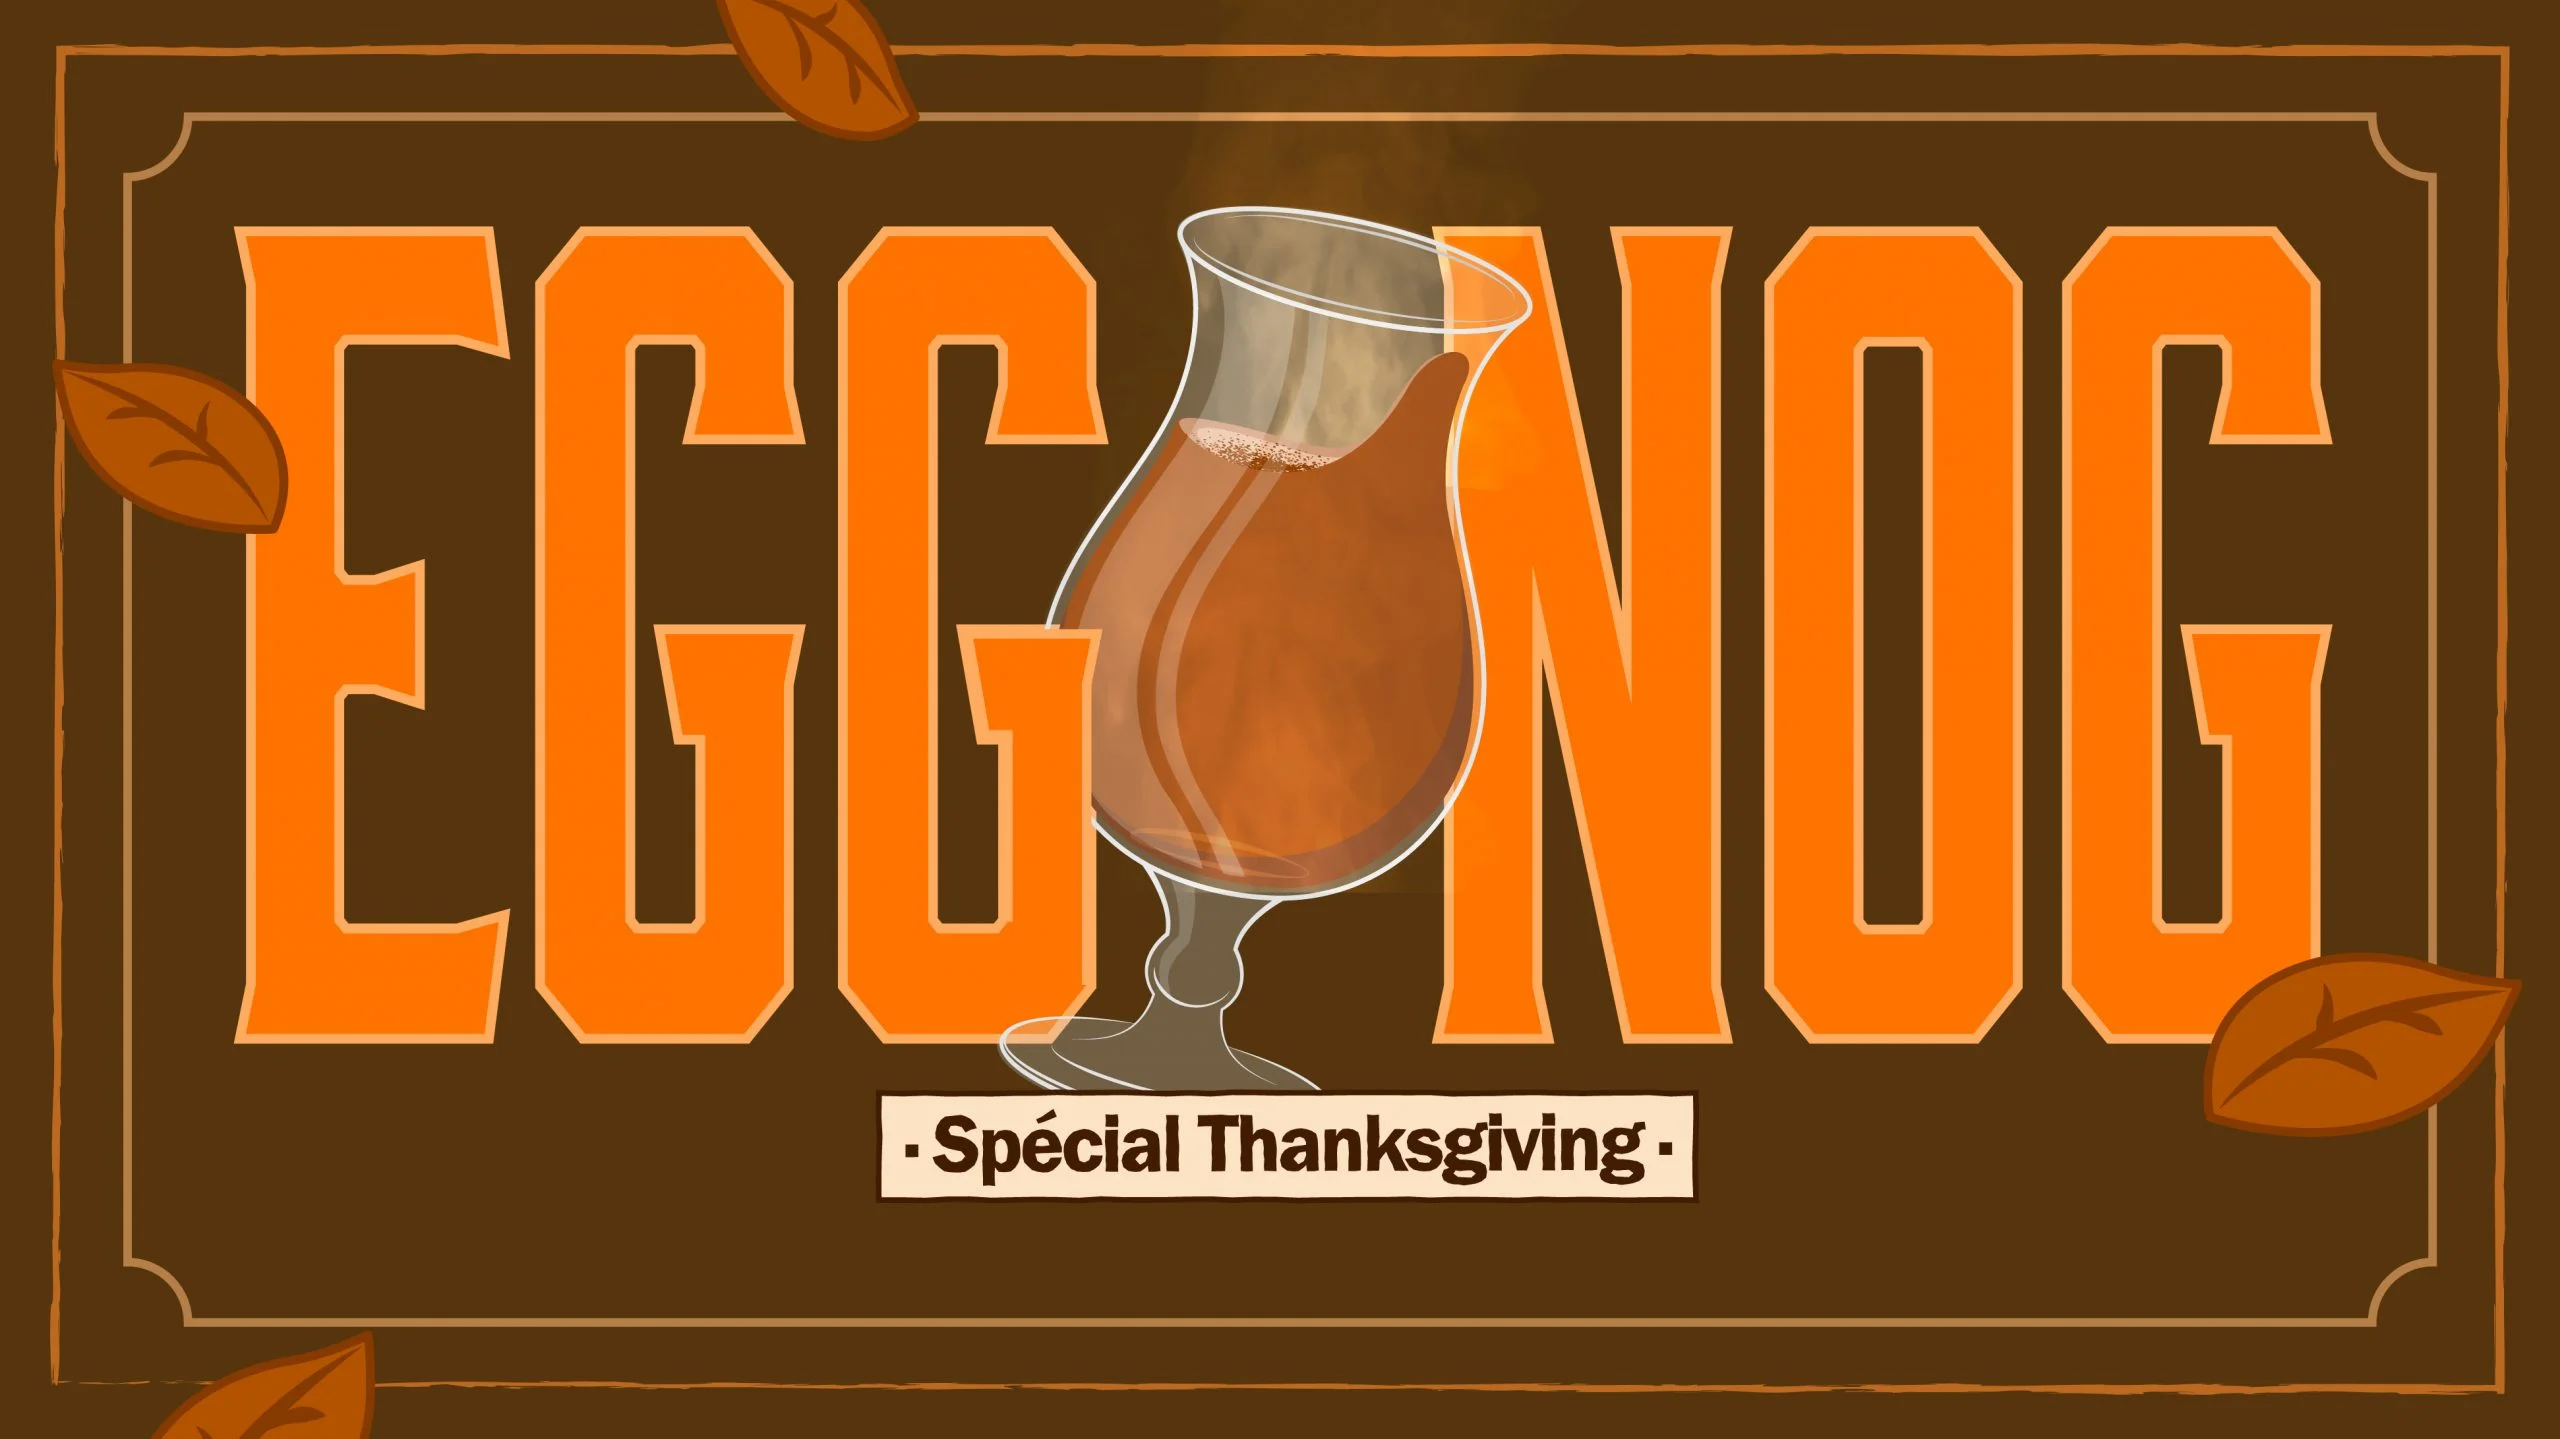 Patrick revisite un cocktail emblématique pour Thanksgiving !